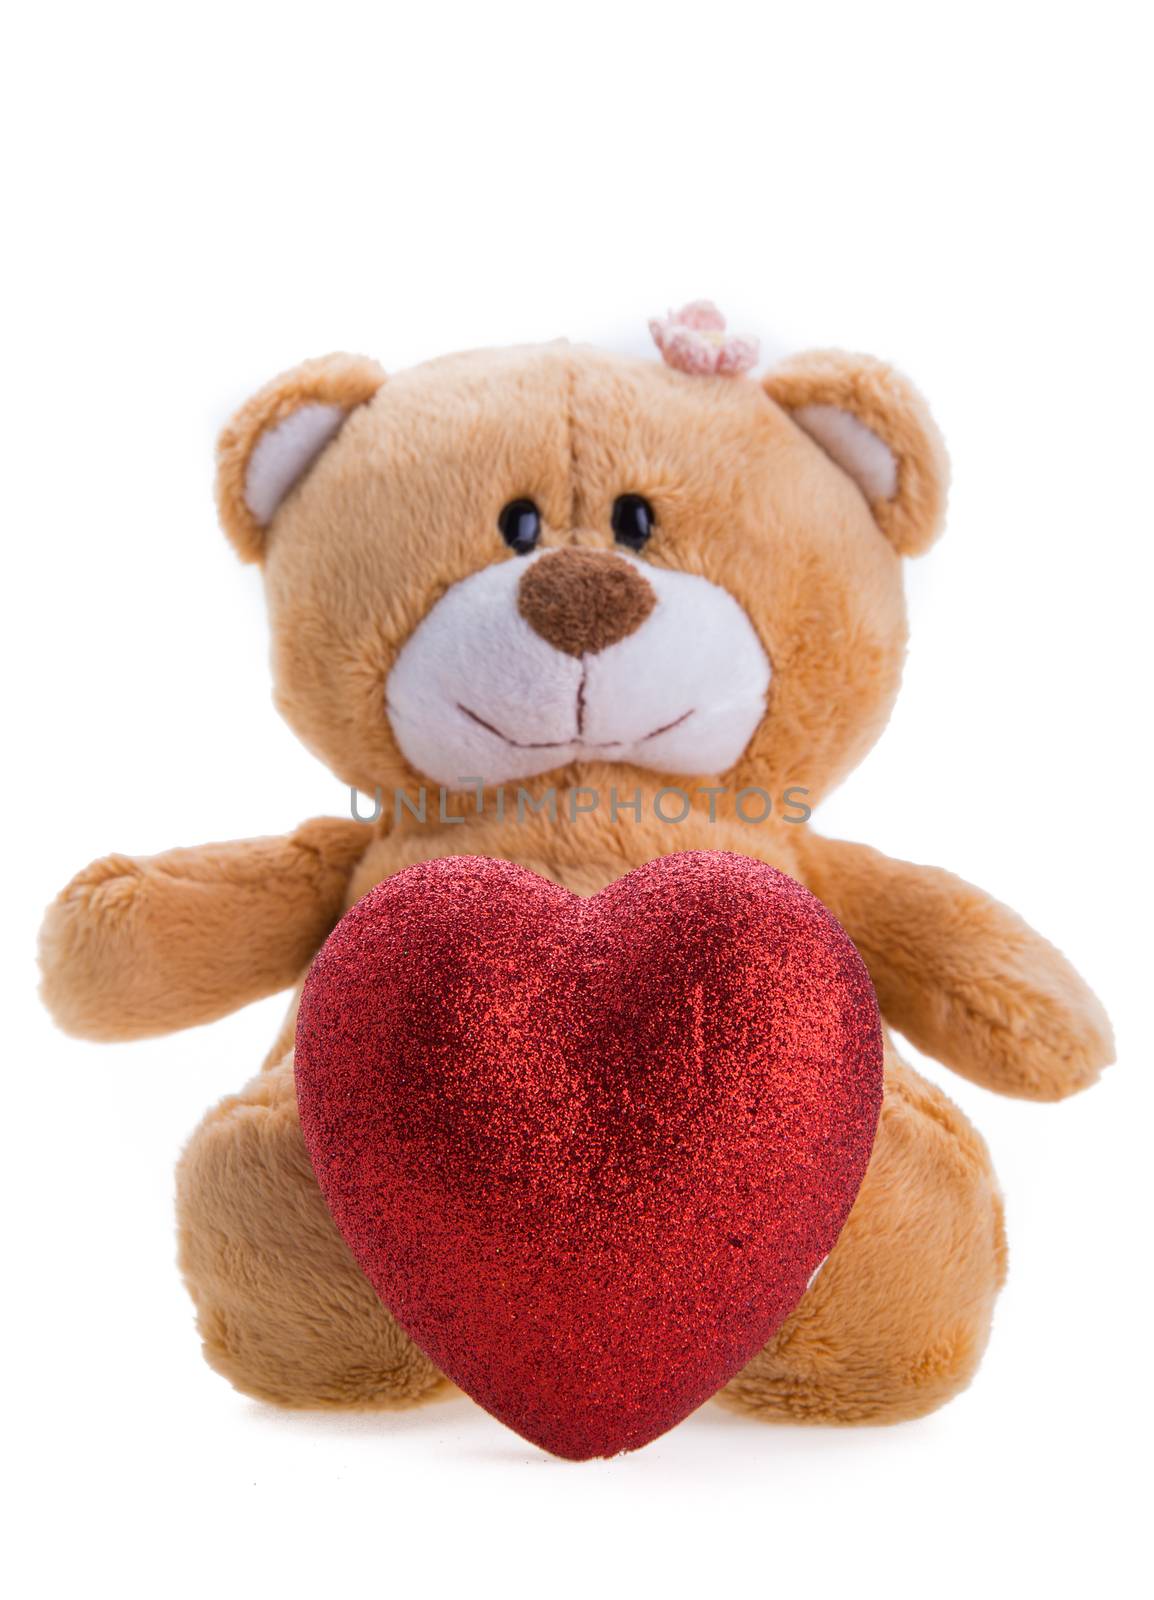 Teddy Bear Holding a Heart by tehcheesiong